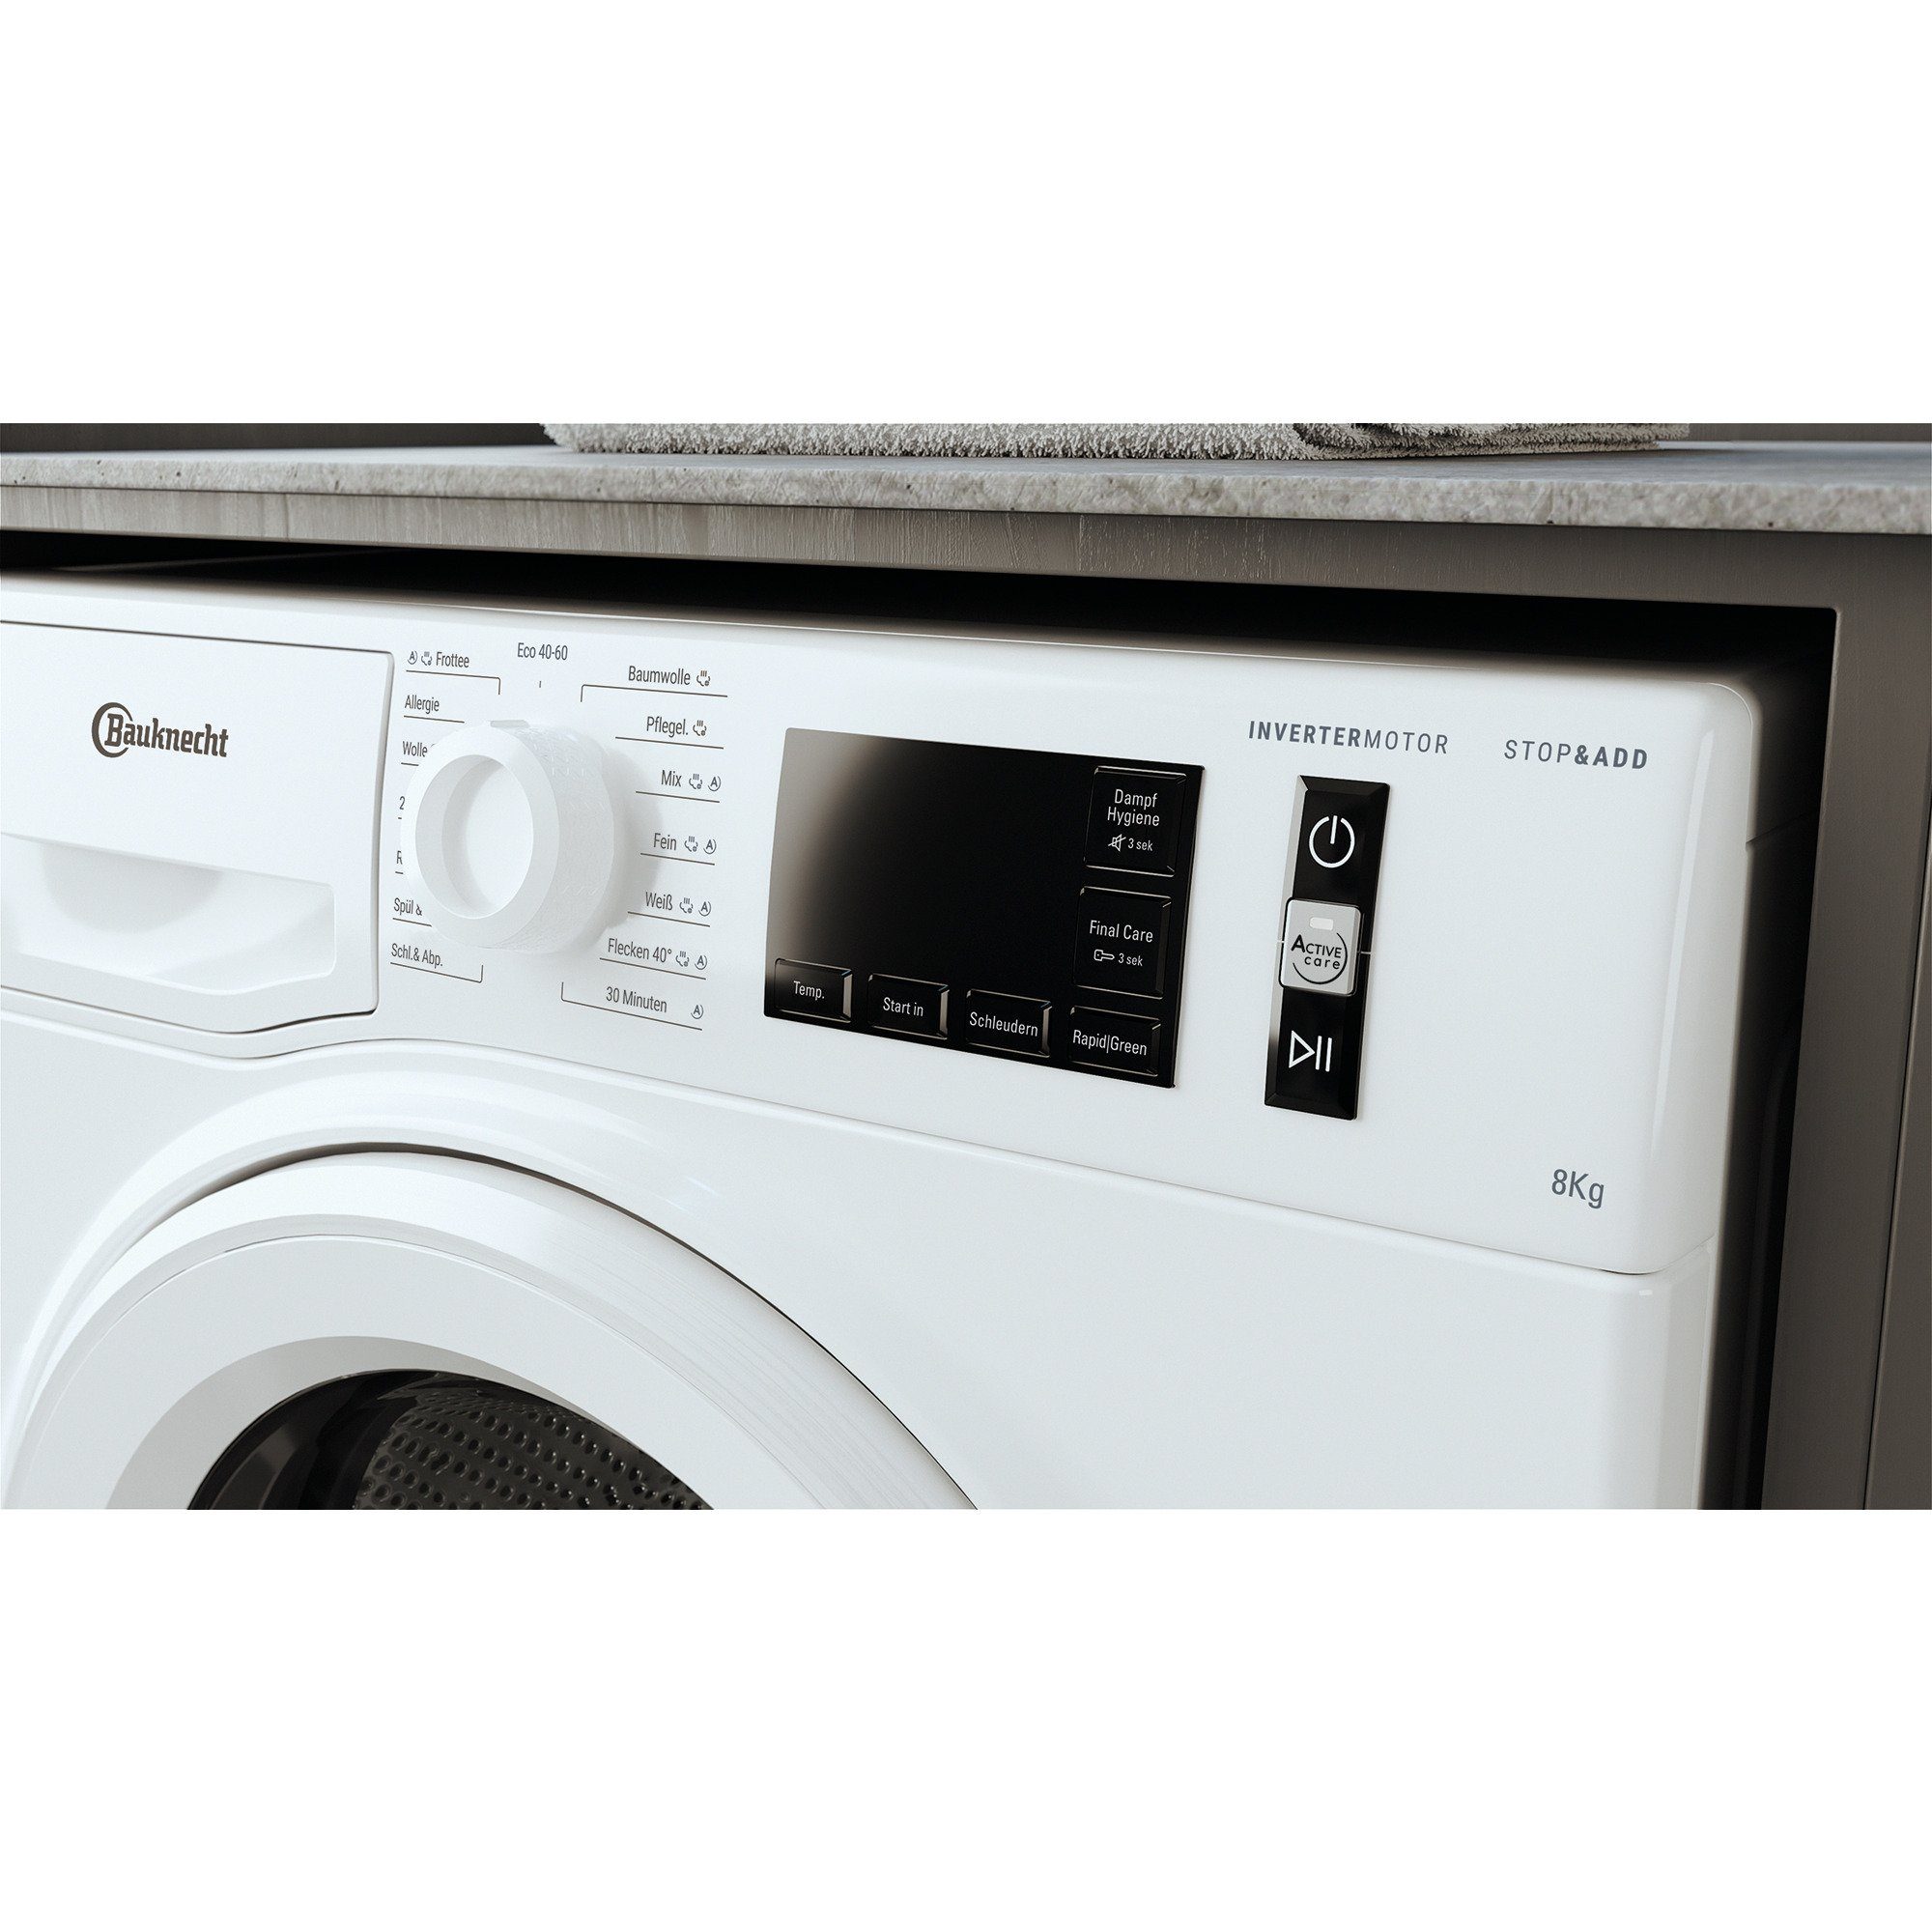 BAUKNECHT Waschmaschine WM 811A